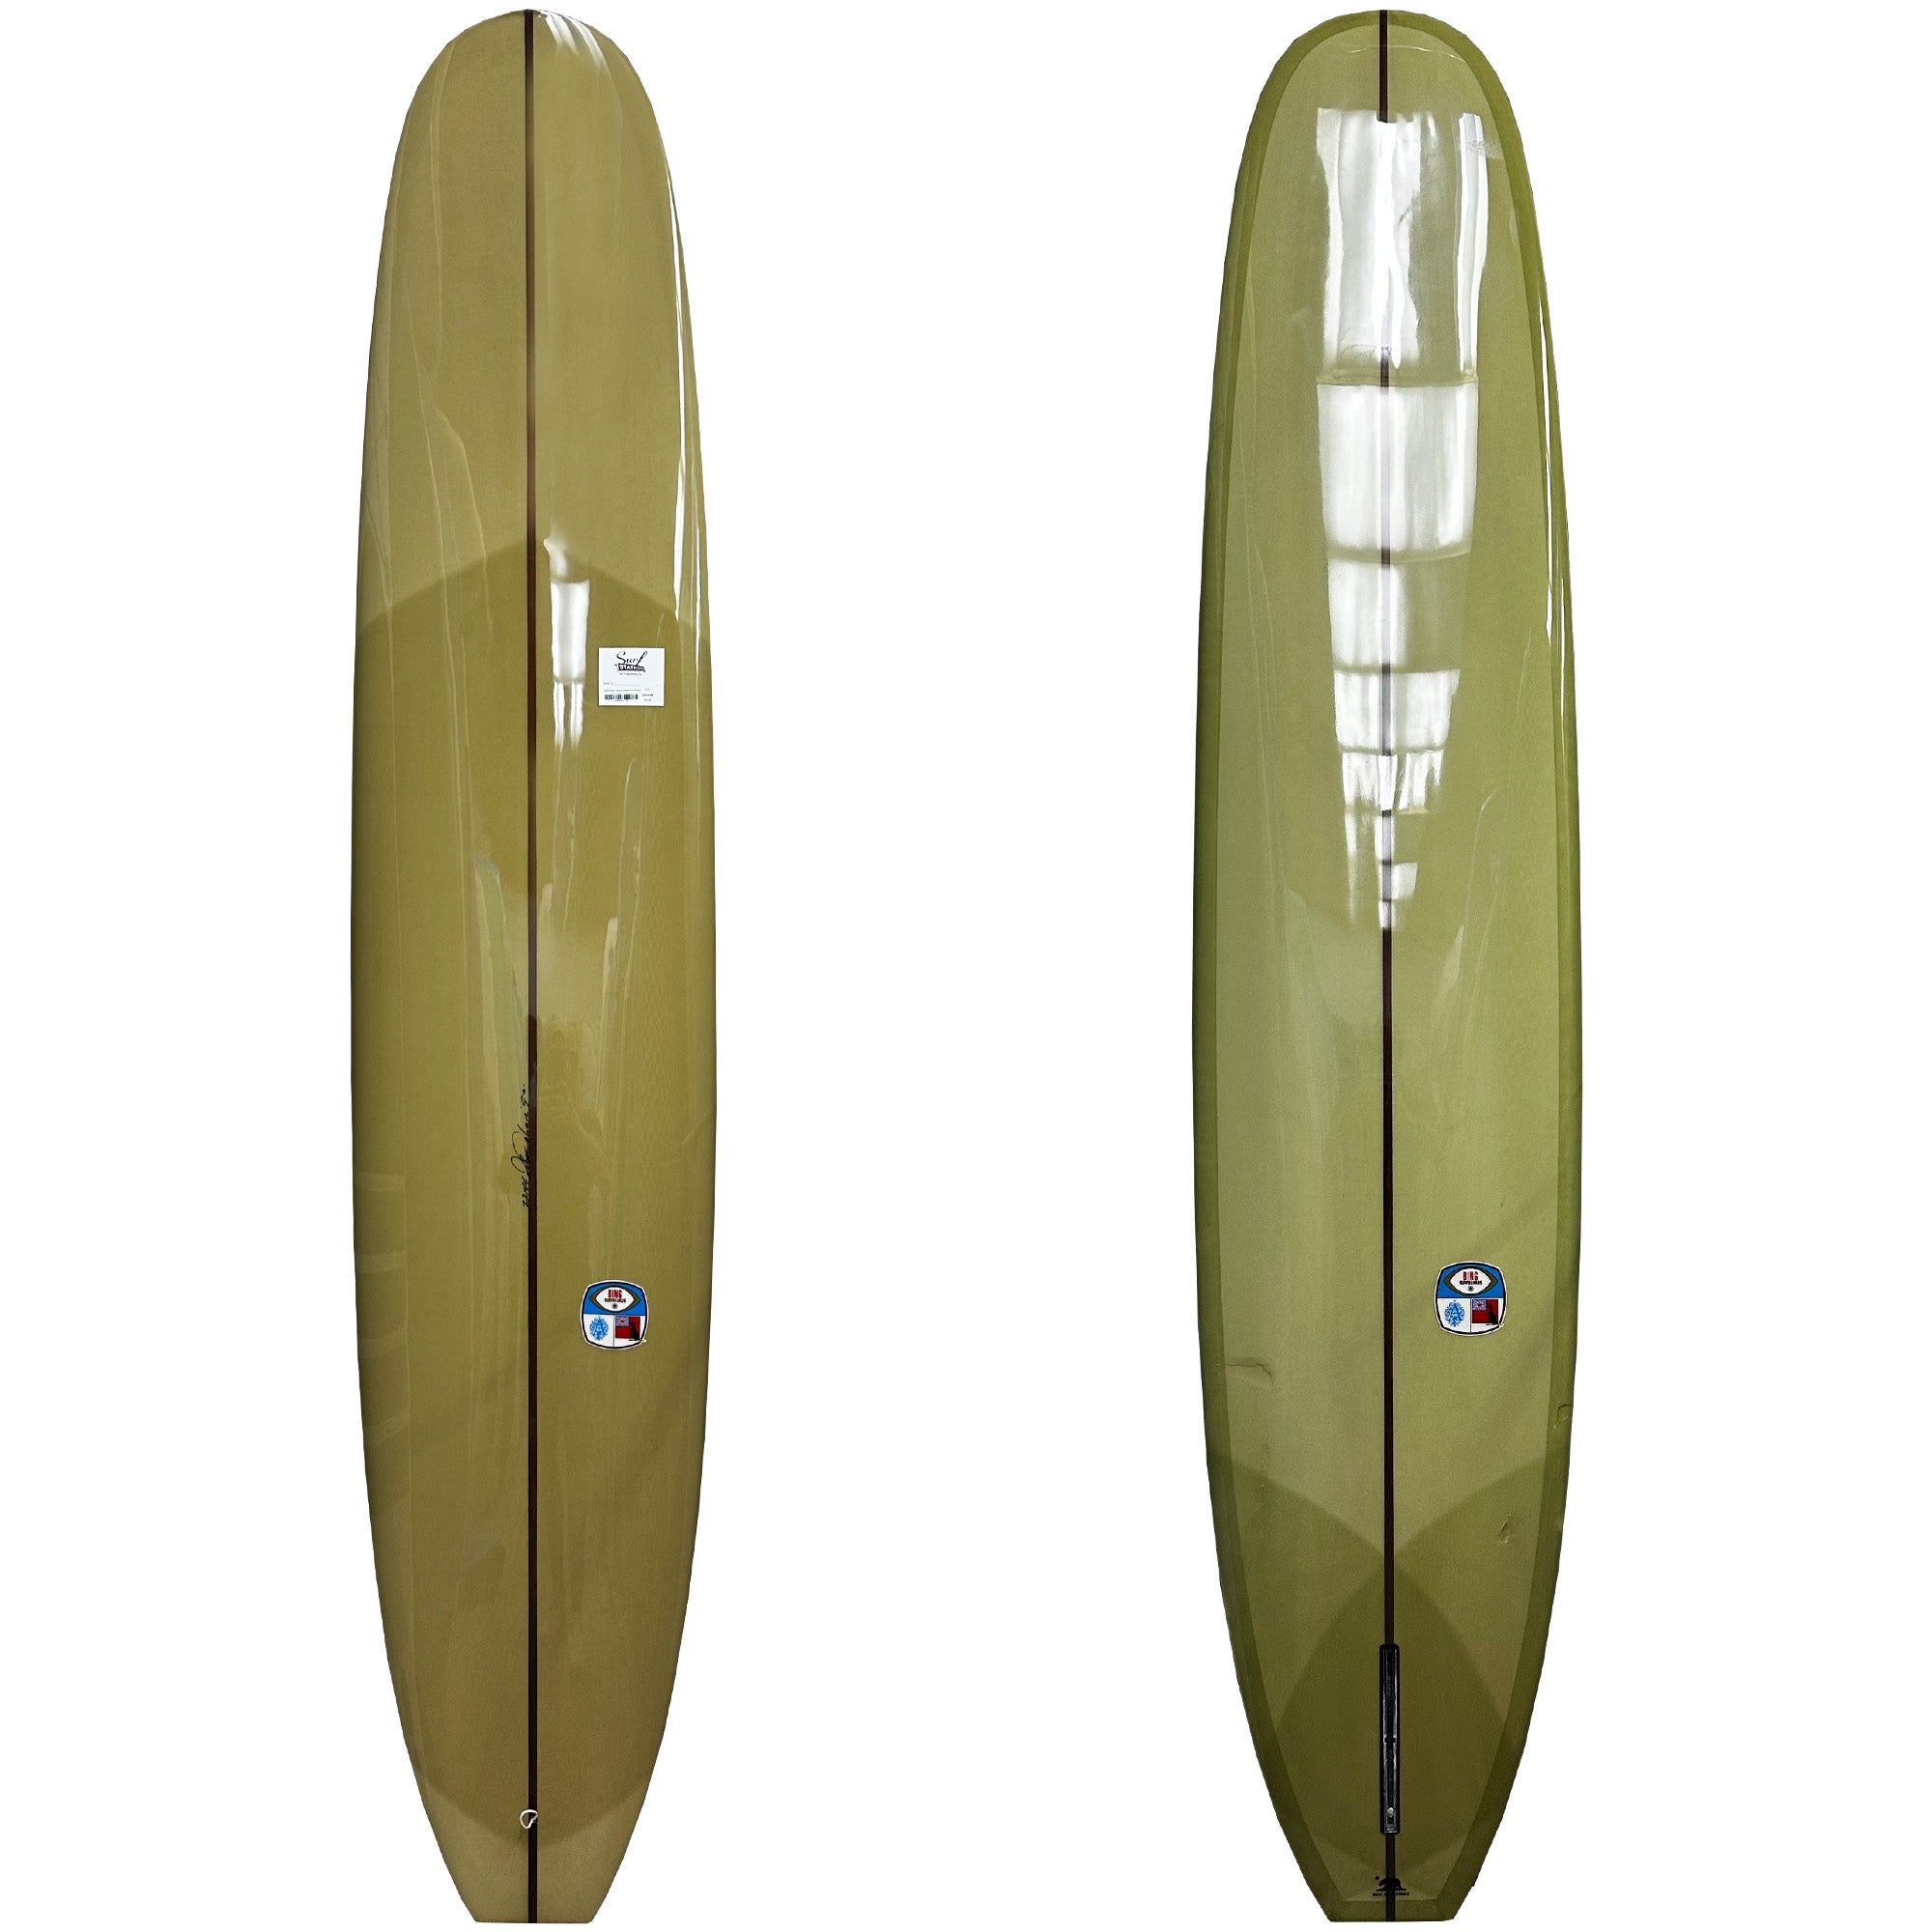 Bing Aussie Square Longboard Surfboard